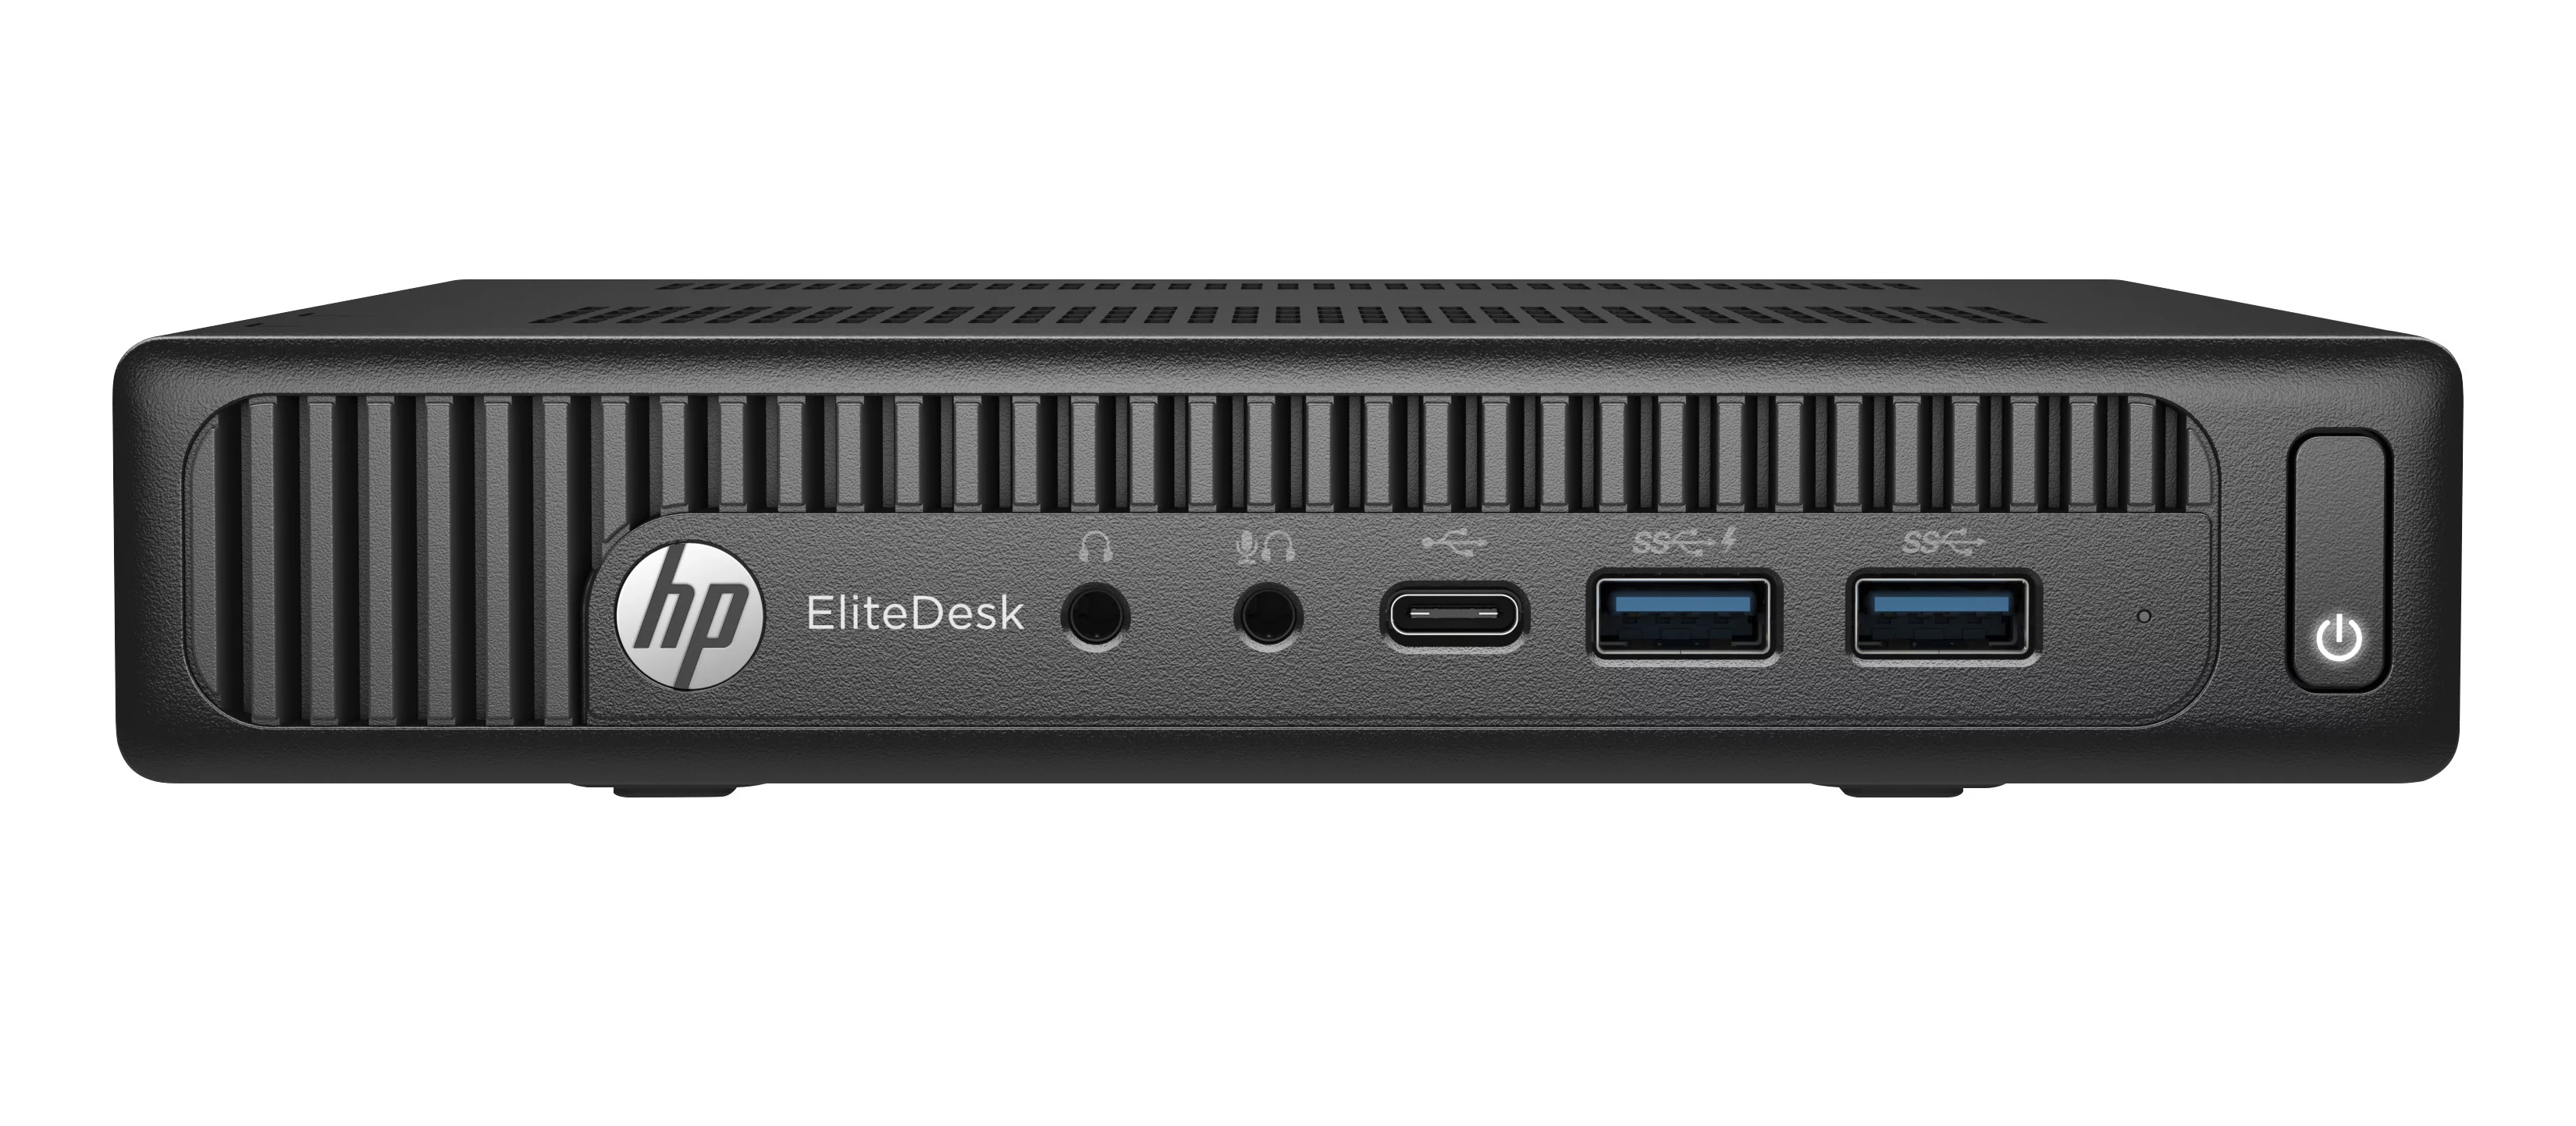 EliteDesk 800 35W G2 Desktop Mini PC (ENERGY STAR)